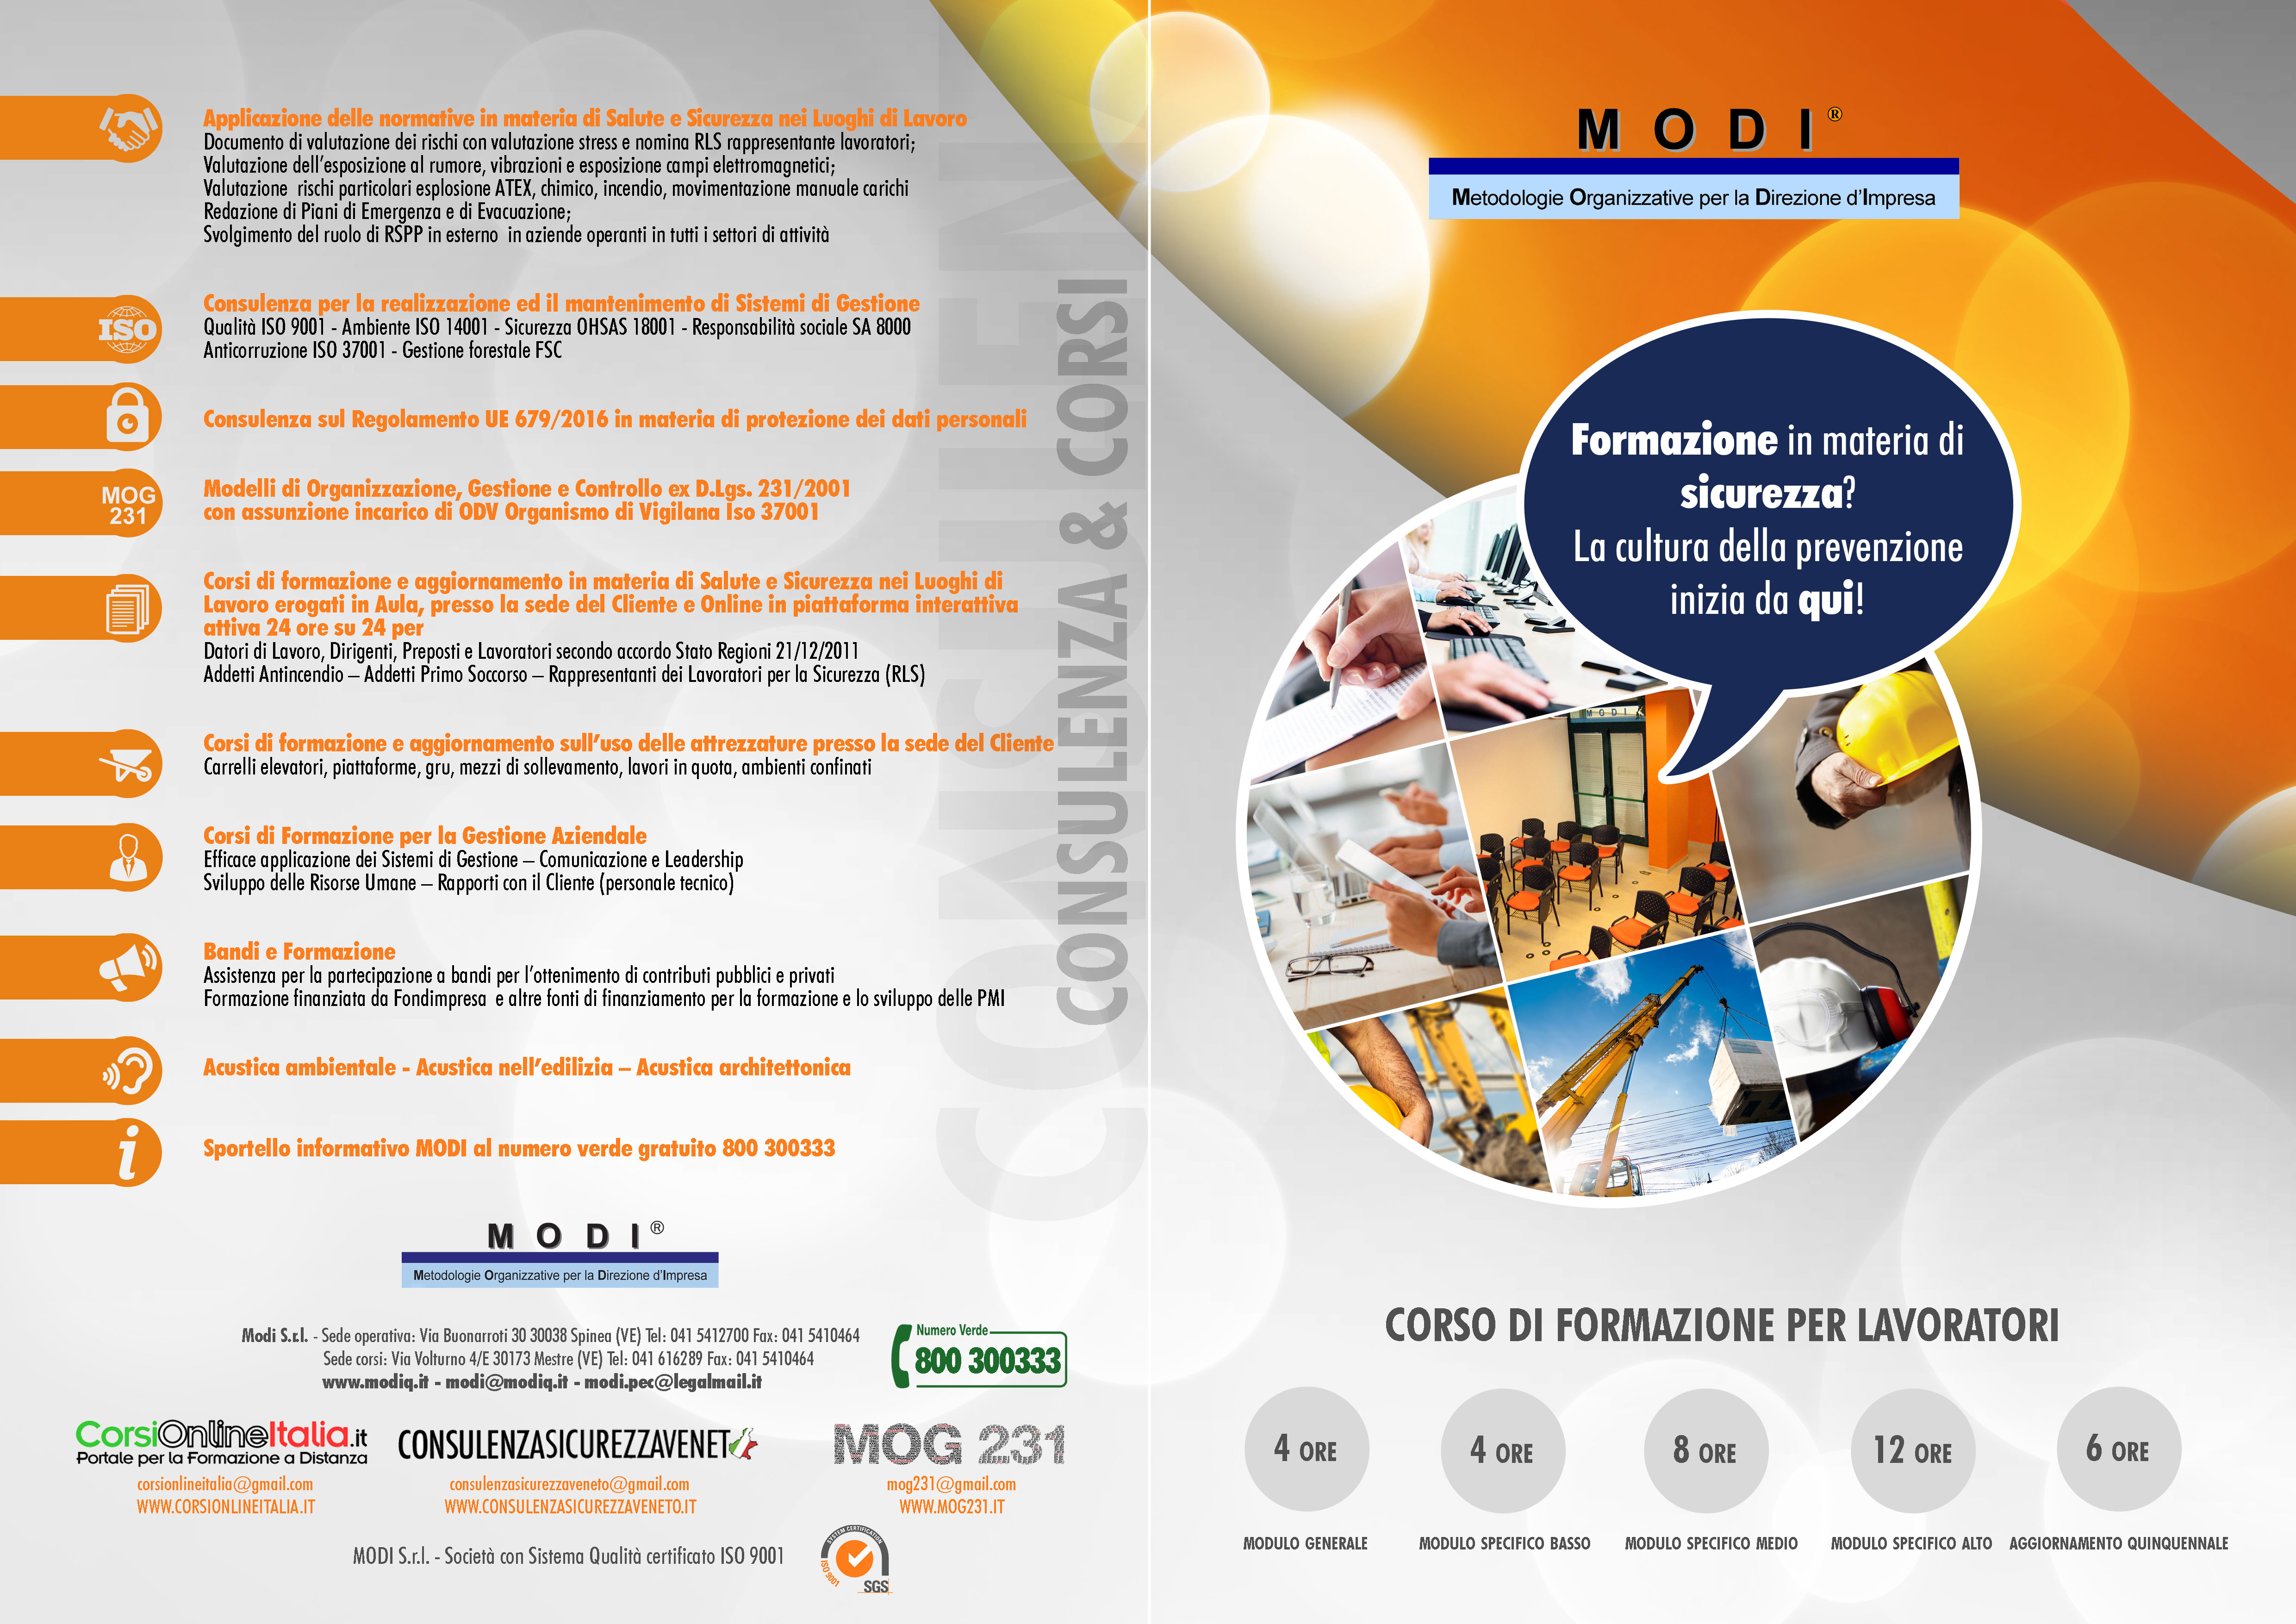 Elenco dei servizi e corsi per i lavoratori erogati dalla società di consulenza e formazione MODI S.r.l.